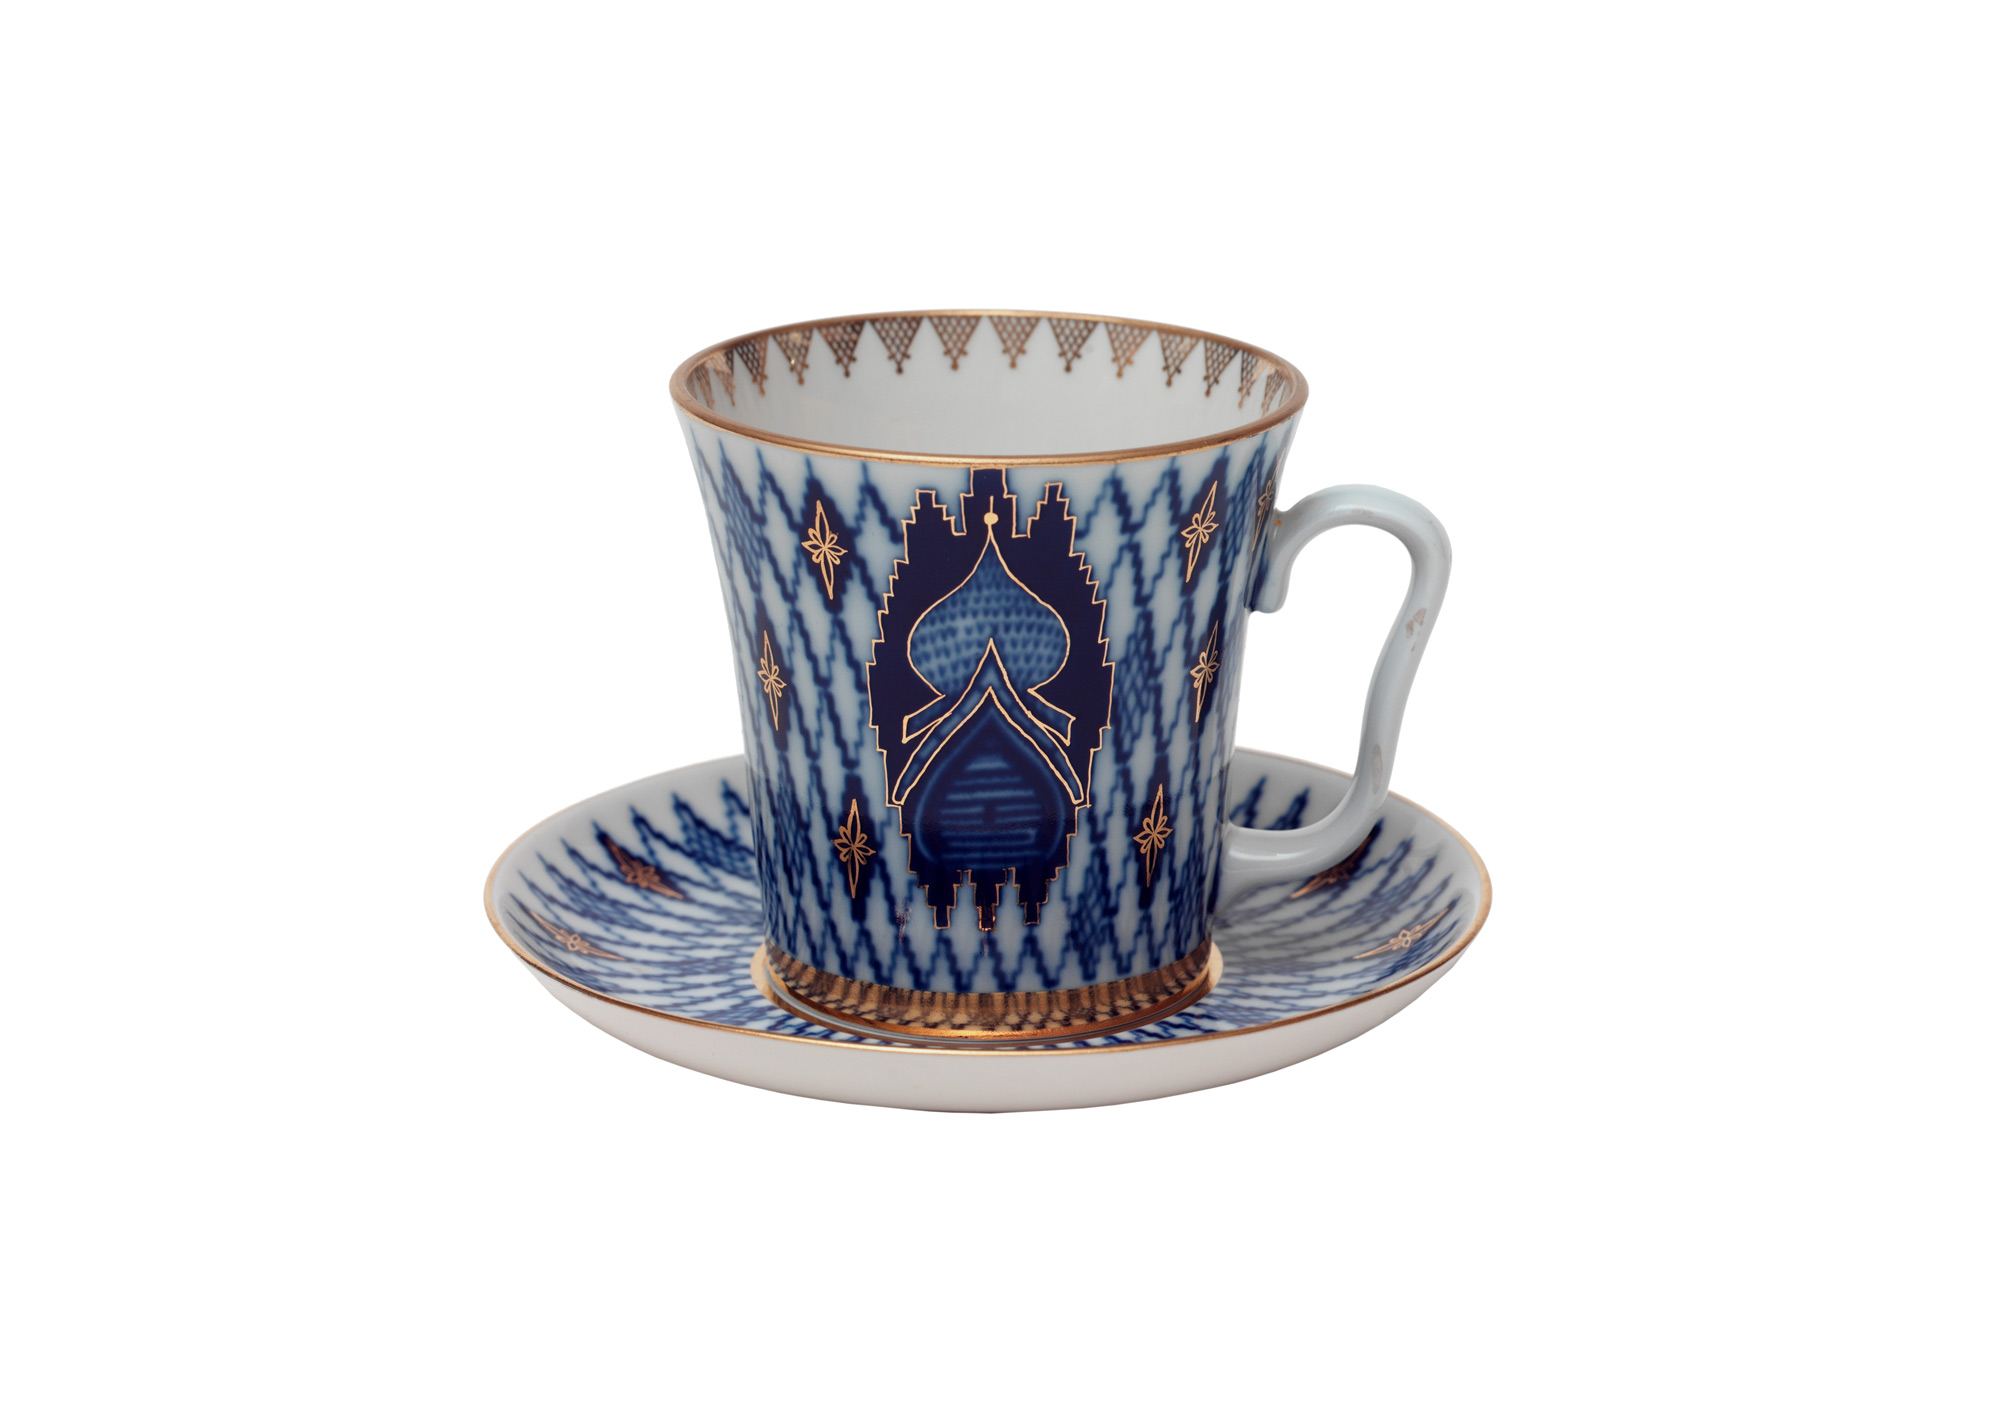 Kiji (Onion Domes) Mug and Saucer - Porcelain Mugs